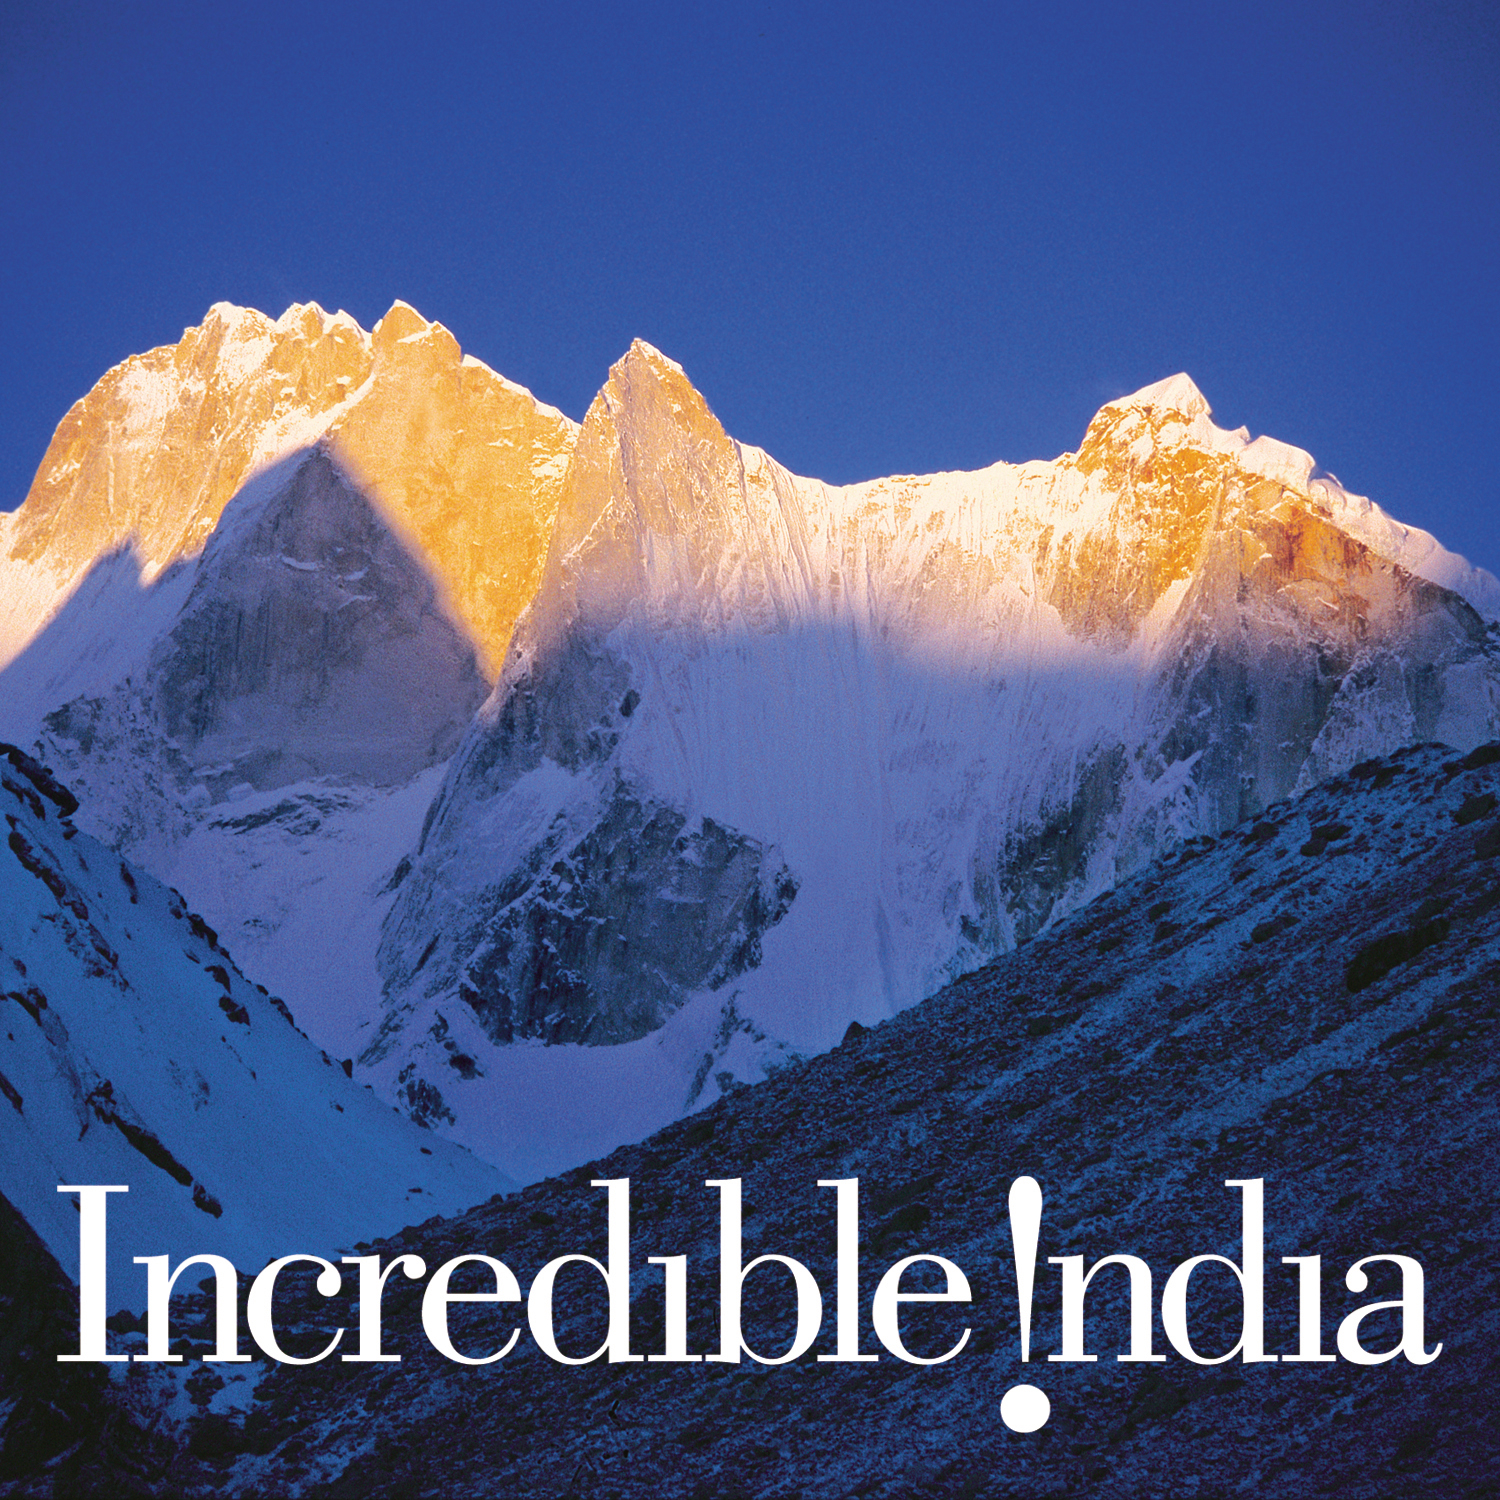 Гималаи что это. Горы Гималаи. Индия горы Гималаи. Горная цепь Гималаи. Вершина Гималаев.